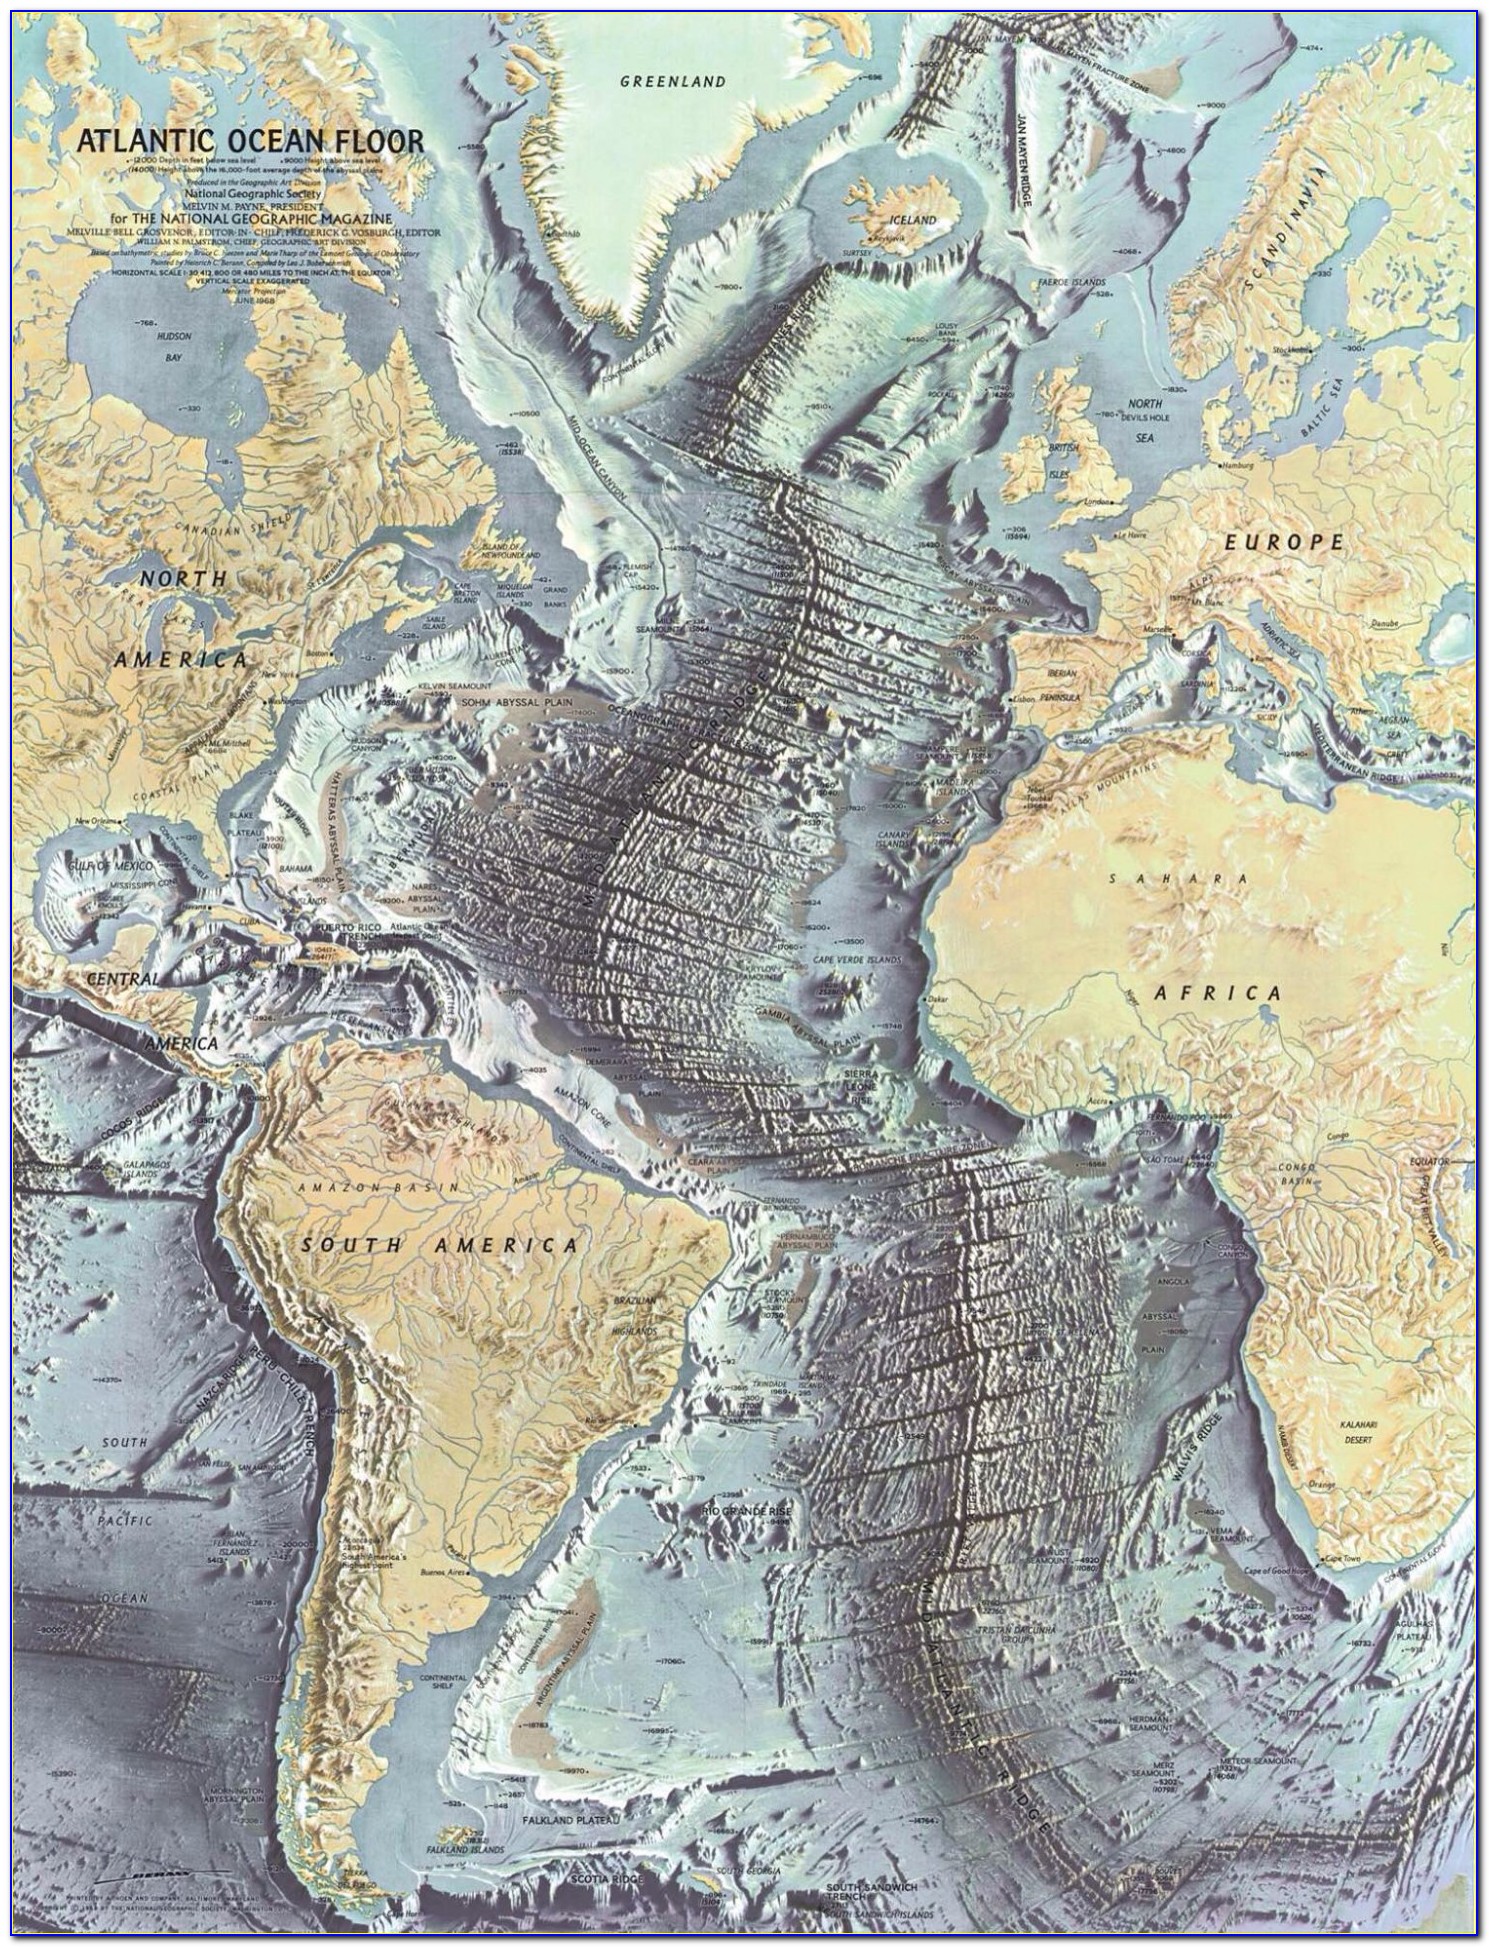 National Geographic Ocean Floor Maps